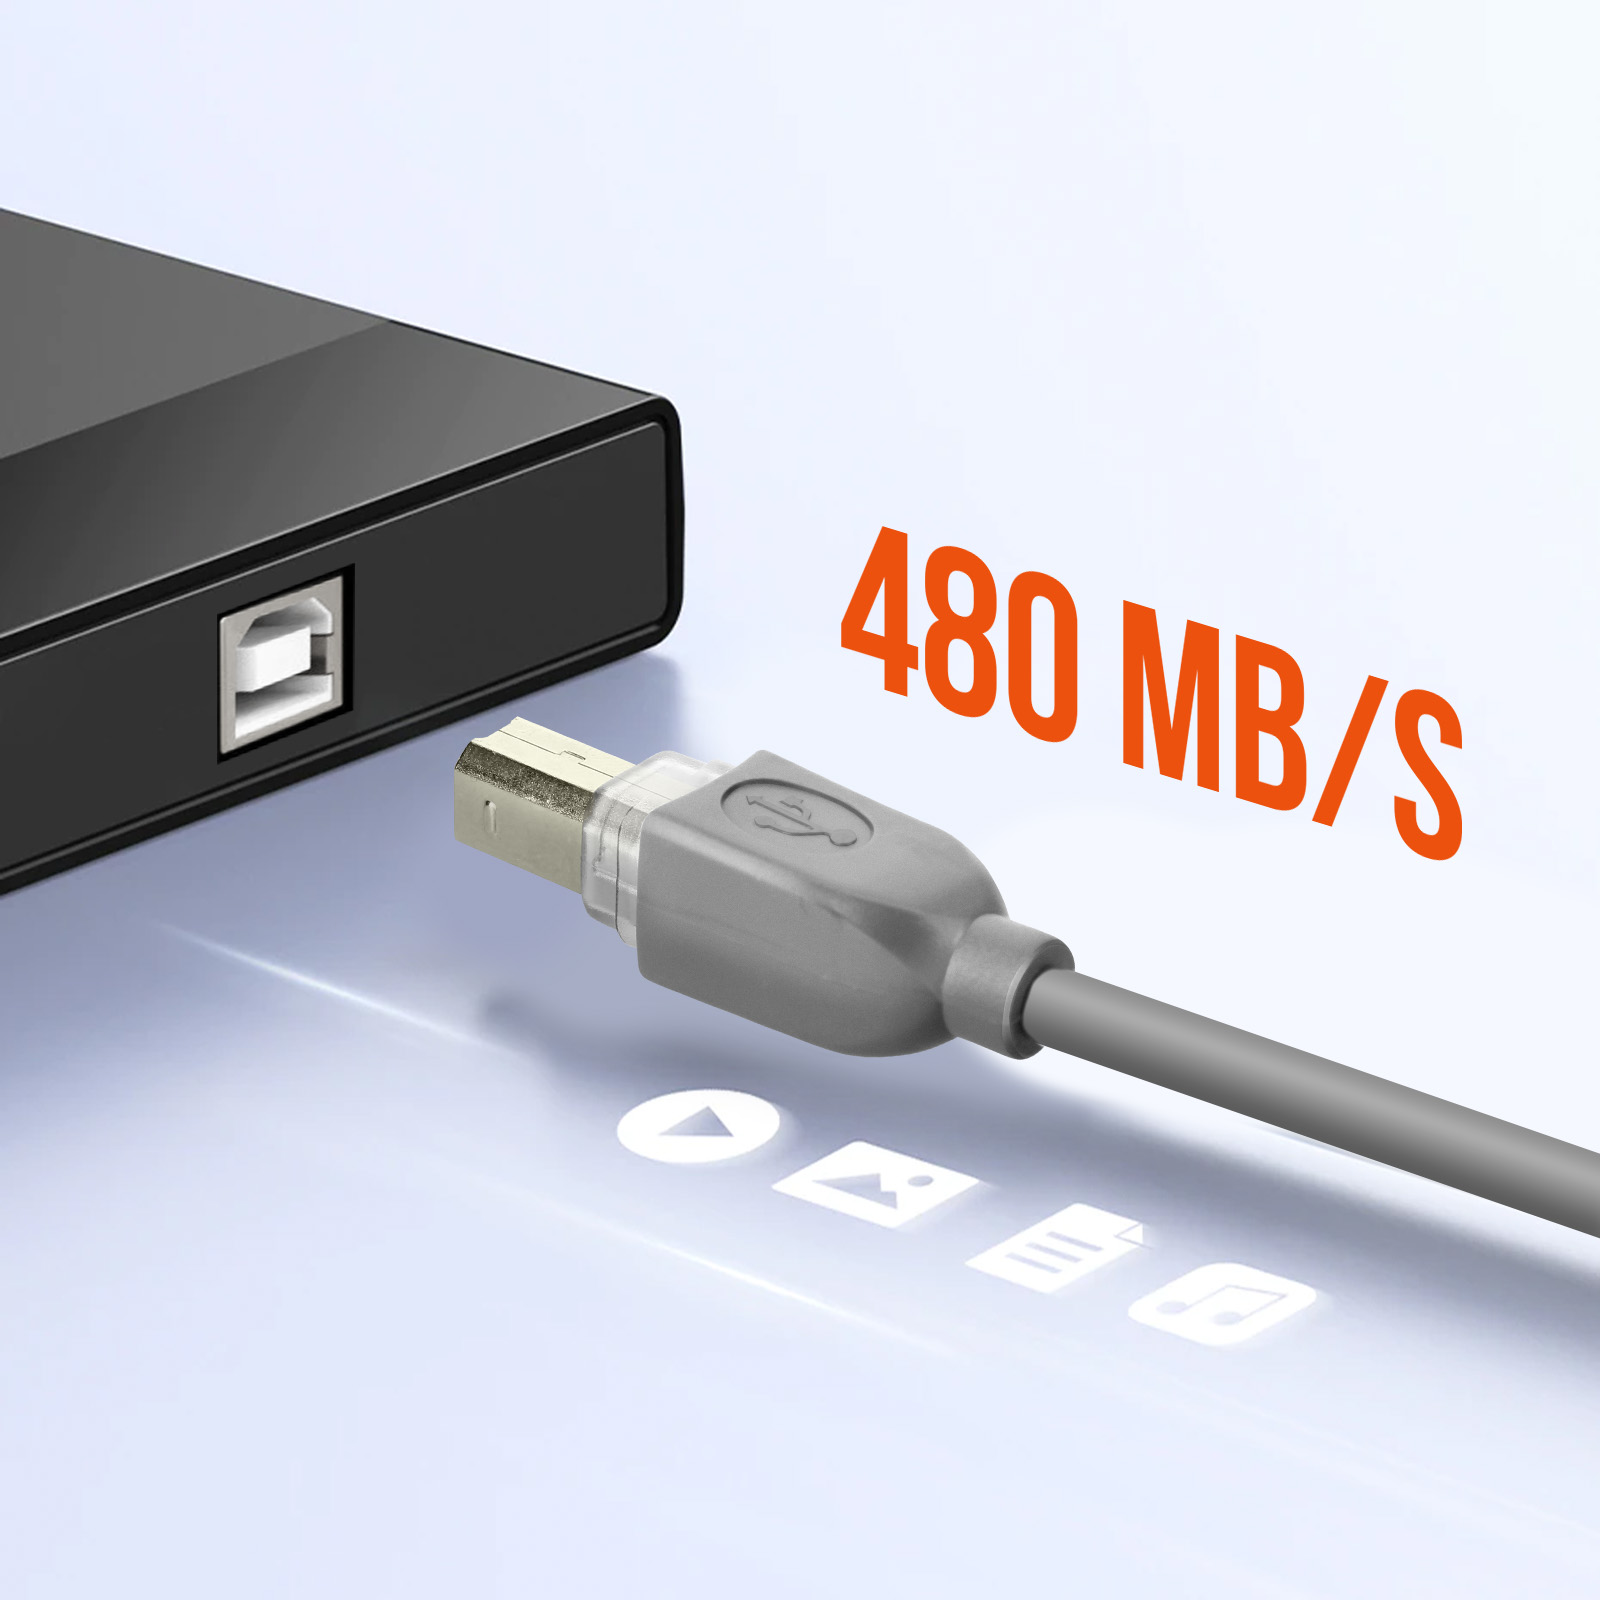 Connectique informatique Temium Câble imprimante USB 2.0 A vers